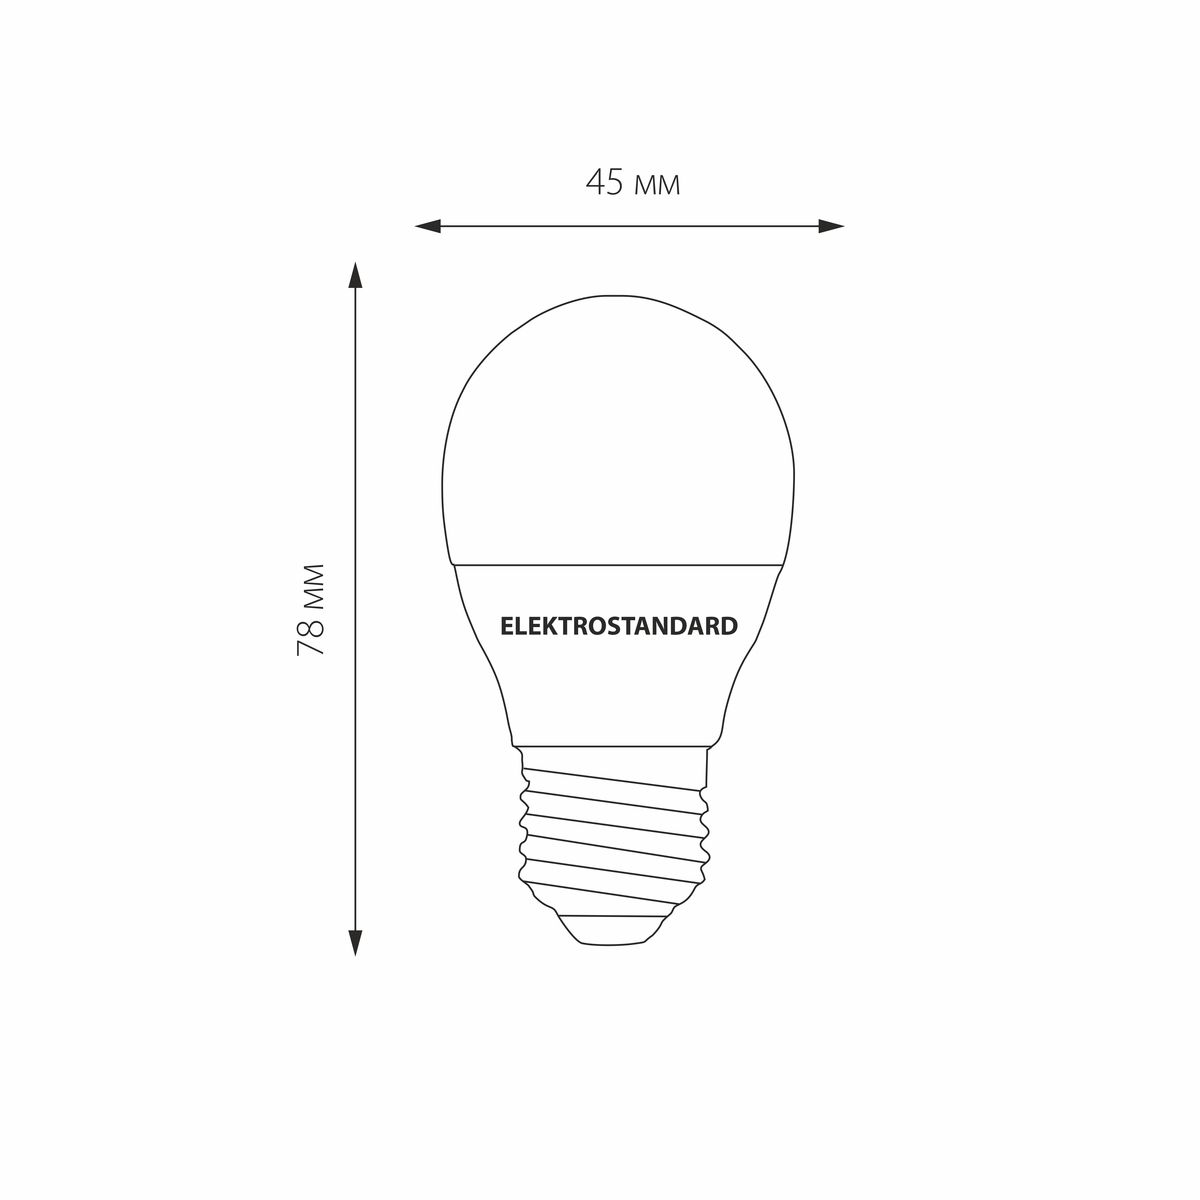 Лампа светодиодная Elektrostandard E27 7W 3300K груша матовая 4690389055256